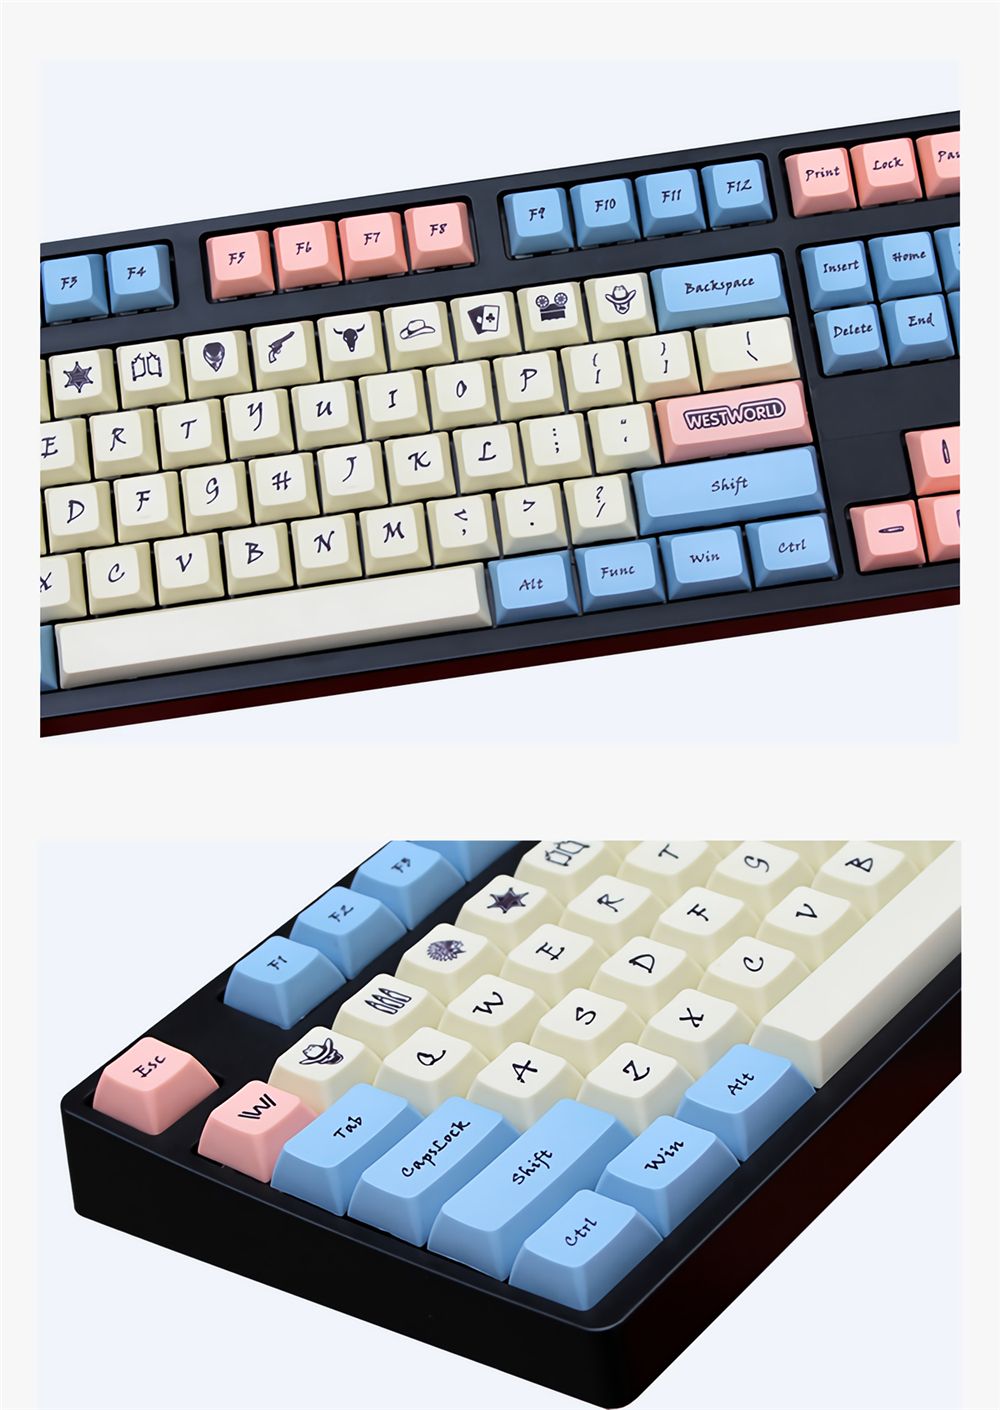 104-Keys-West-World-Keycap-Set-KT1-Profile-PBT-Sublimation-Keycaps-for-Mechanical-Keyboards-1701065